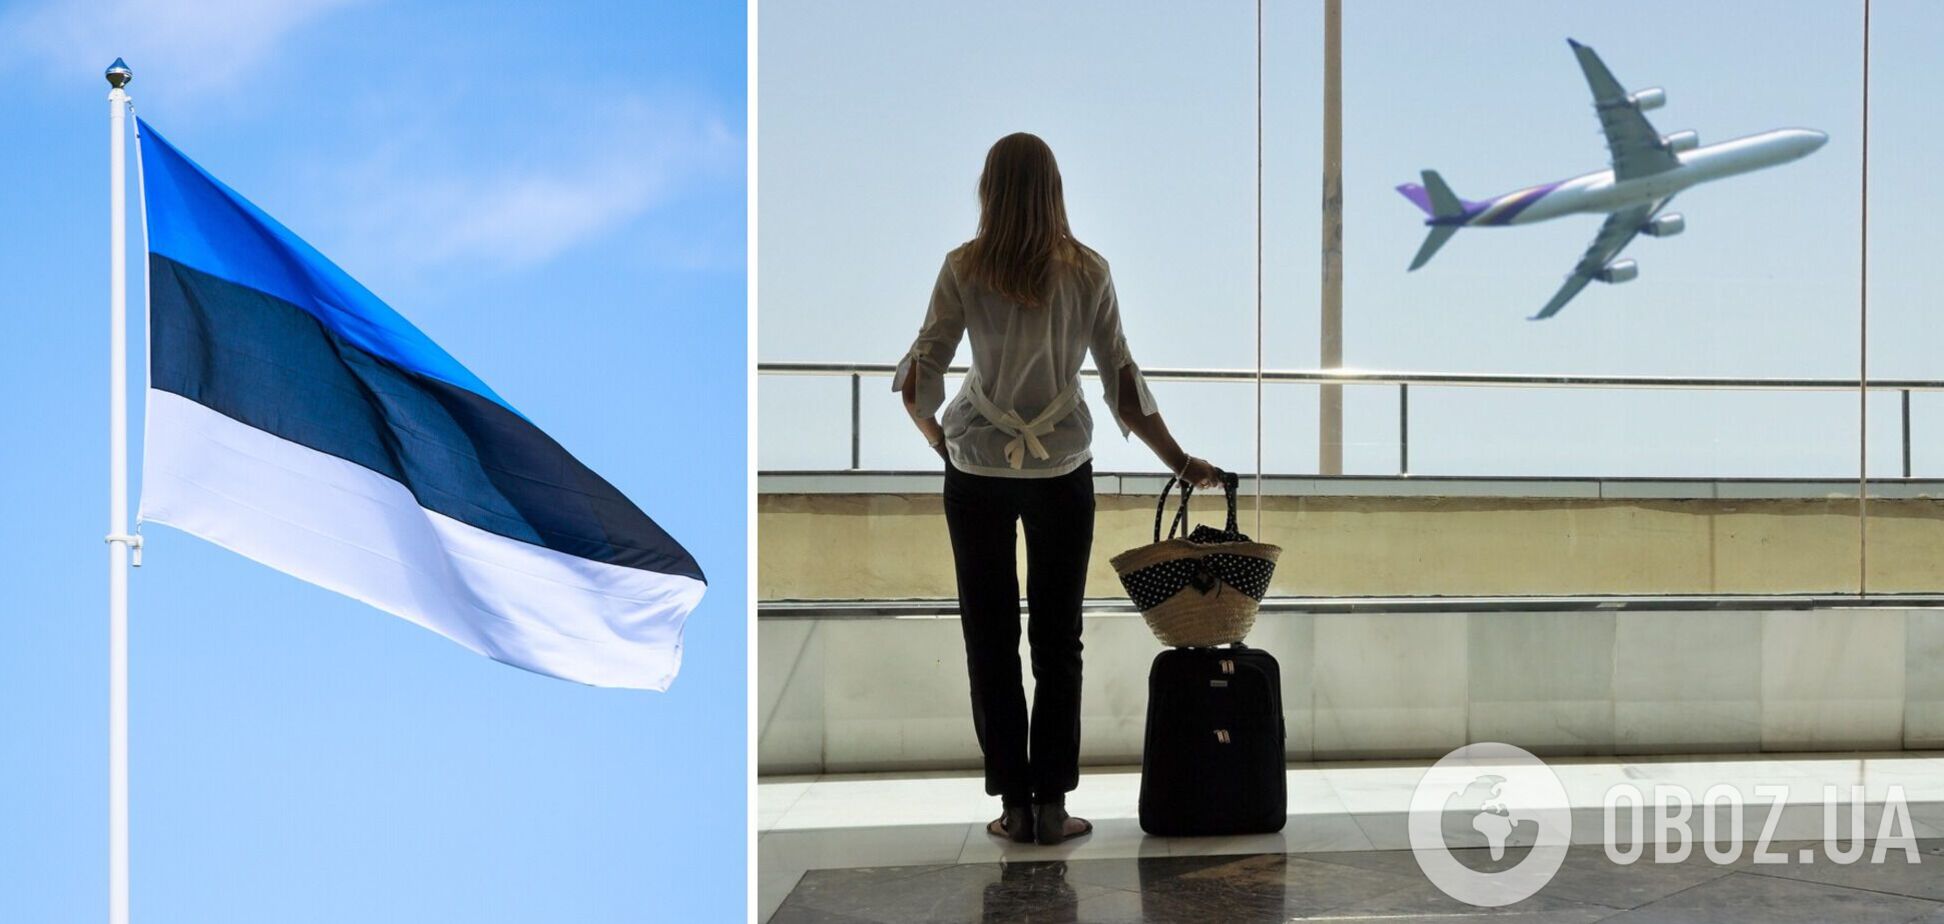 Эстония приостановила выдачу туристических виз россиянам из-за войны в Украине